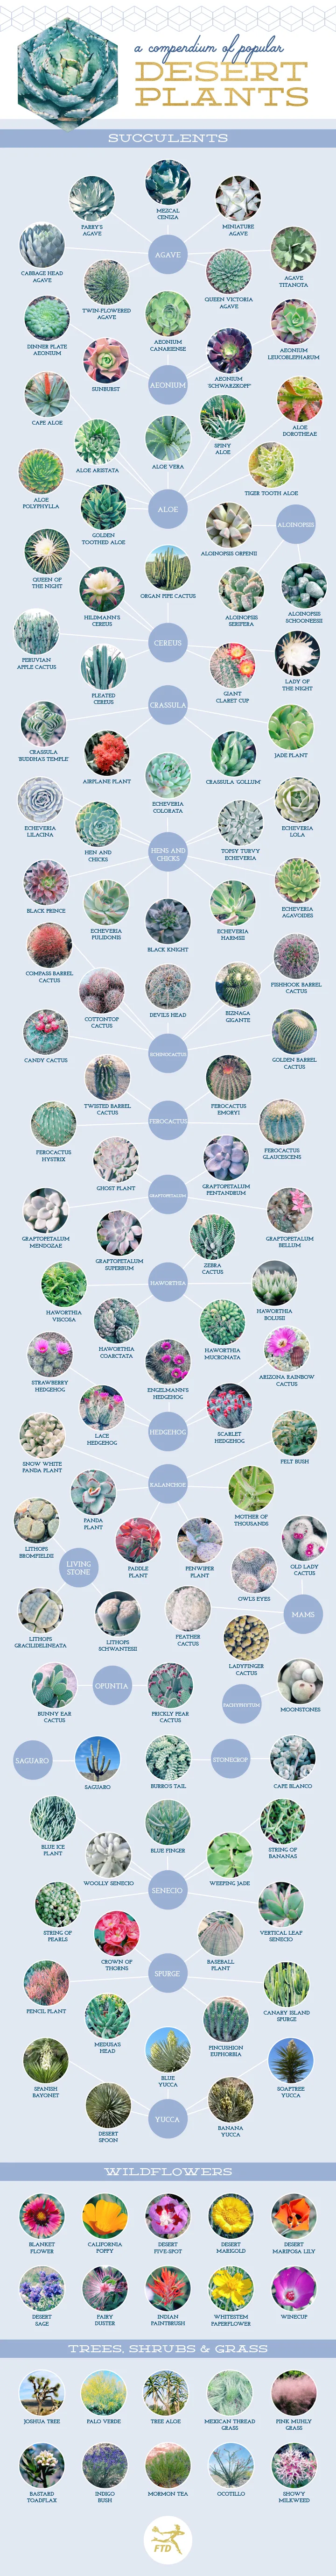 127 Stunning Desert Plants